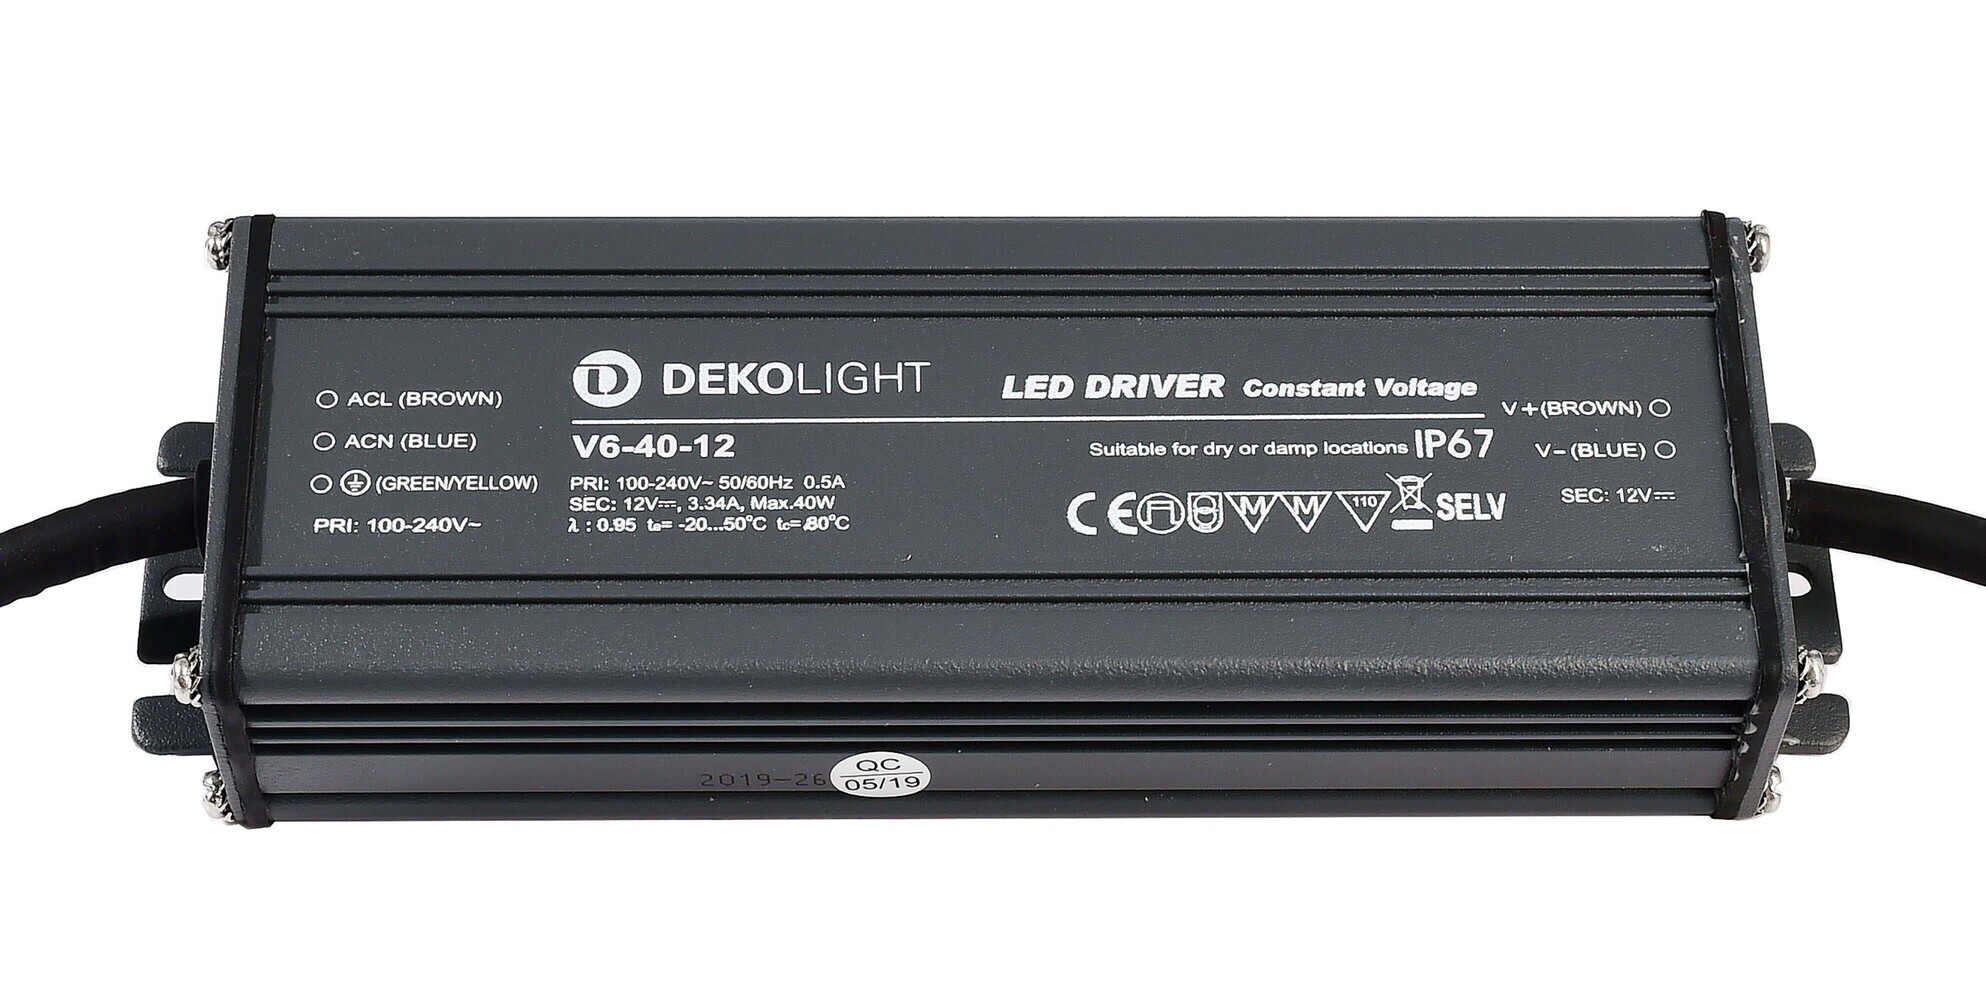 Hochwertiges LED Netzteil von Deko-Light